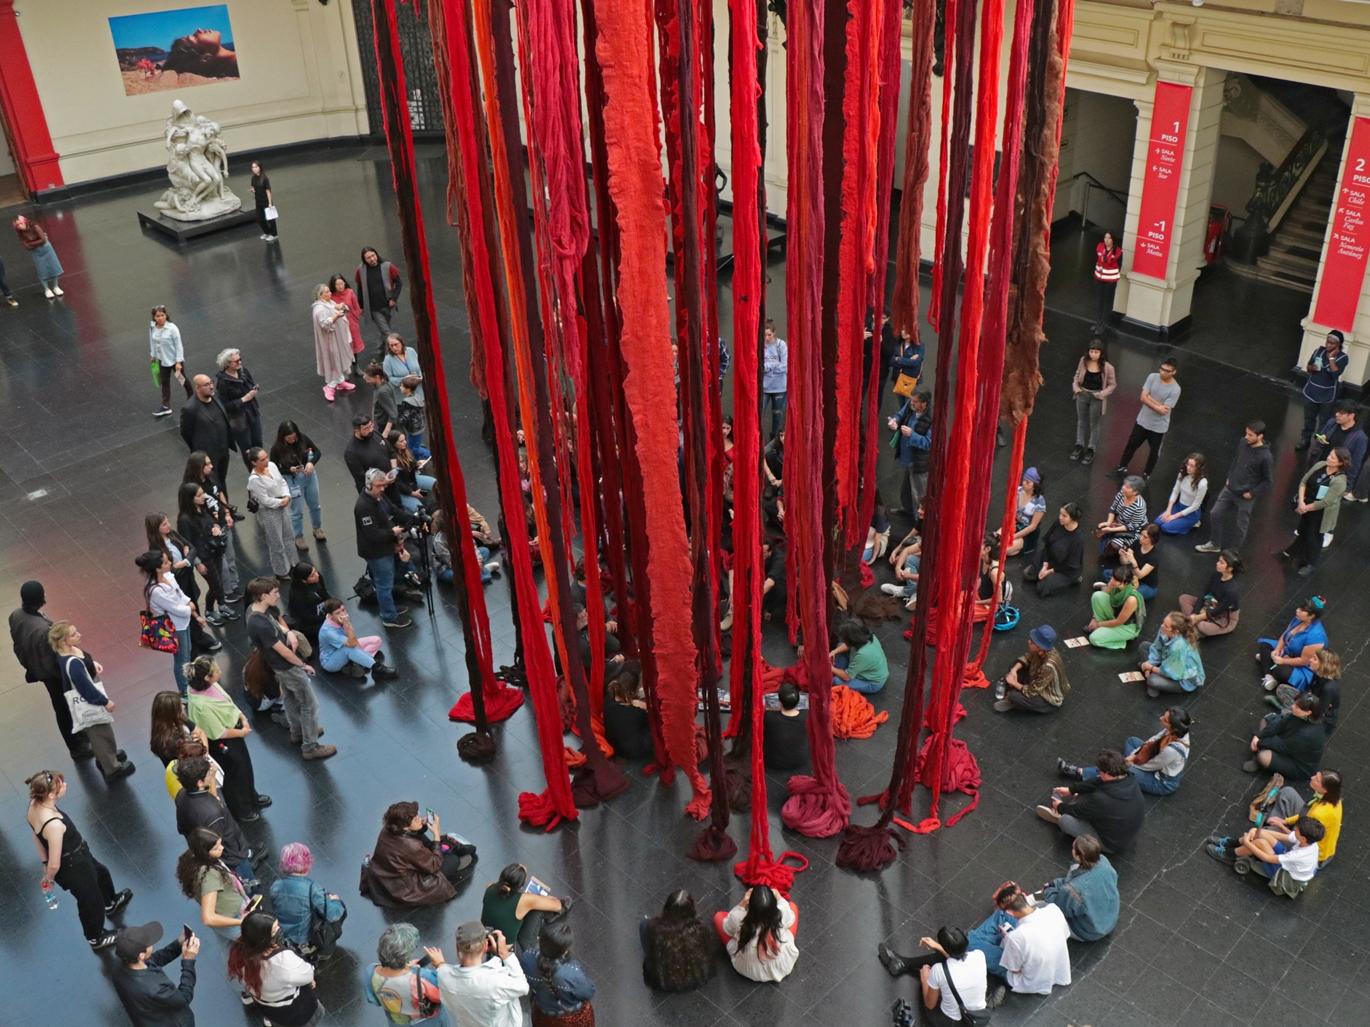 Fotografía de grupo de personas en el hall del Museo, sentadas alrededor de instalación colgante en tonos rojos